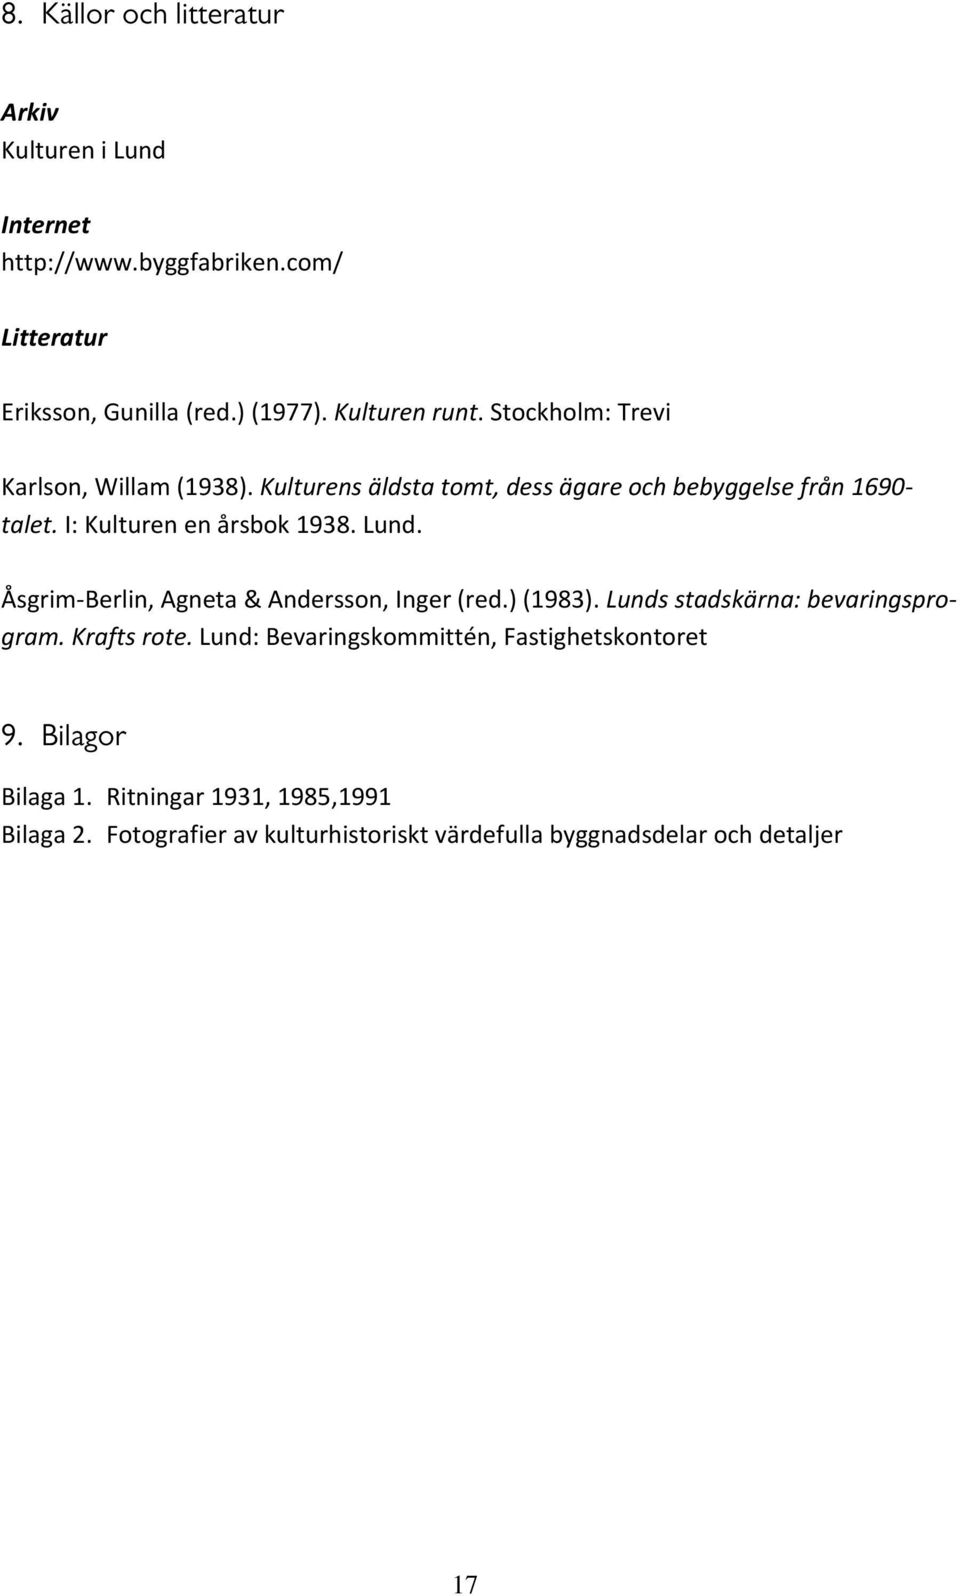 I: Kulturen en årsbok 1938. Lund. Åsgrim Berlin, Agneta & Andersson, Inger (red.) (1983). Lunds stadskärna: bevaringsprogram. Krafts rote.